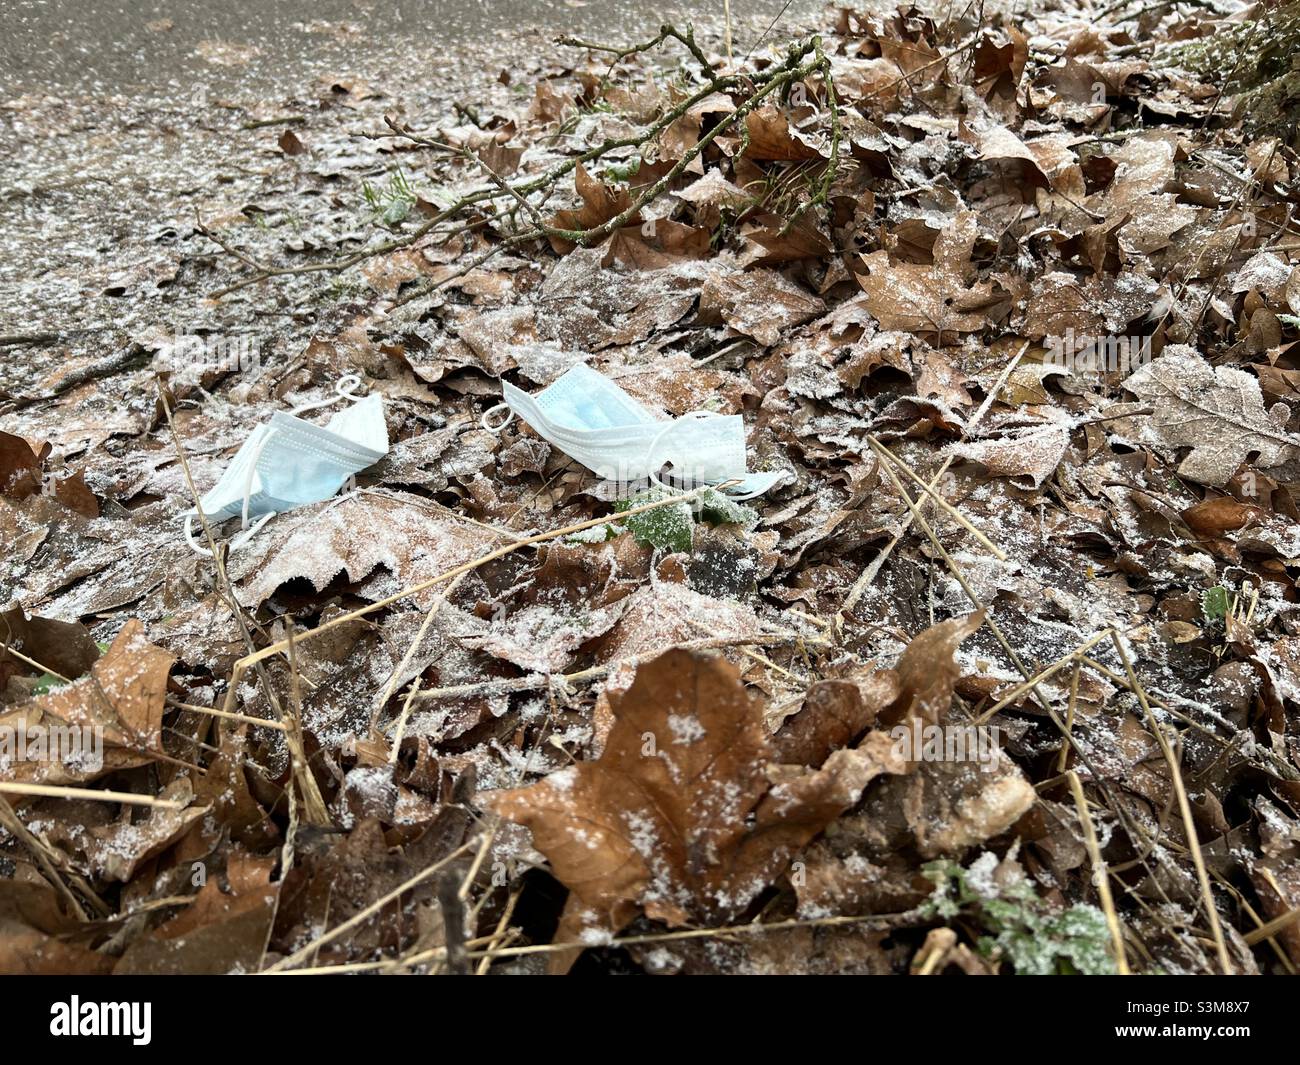 Deux masques médicaux jetés sur le sol parmi des feuilles brunes partiellement couvertes de neige.Hambourg, Allemagne Banque D'Images